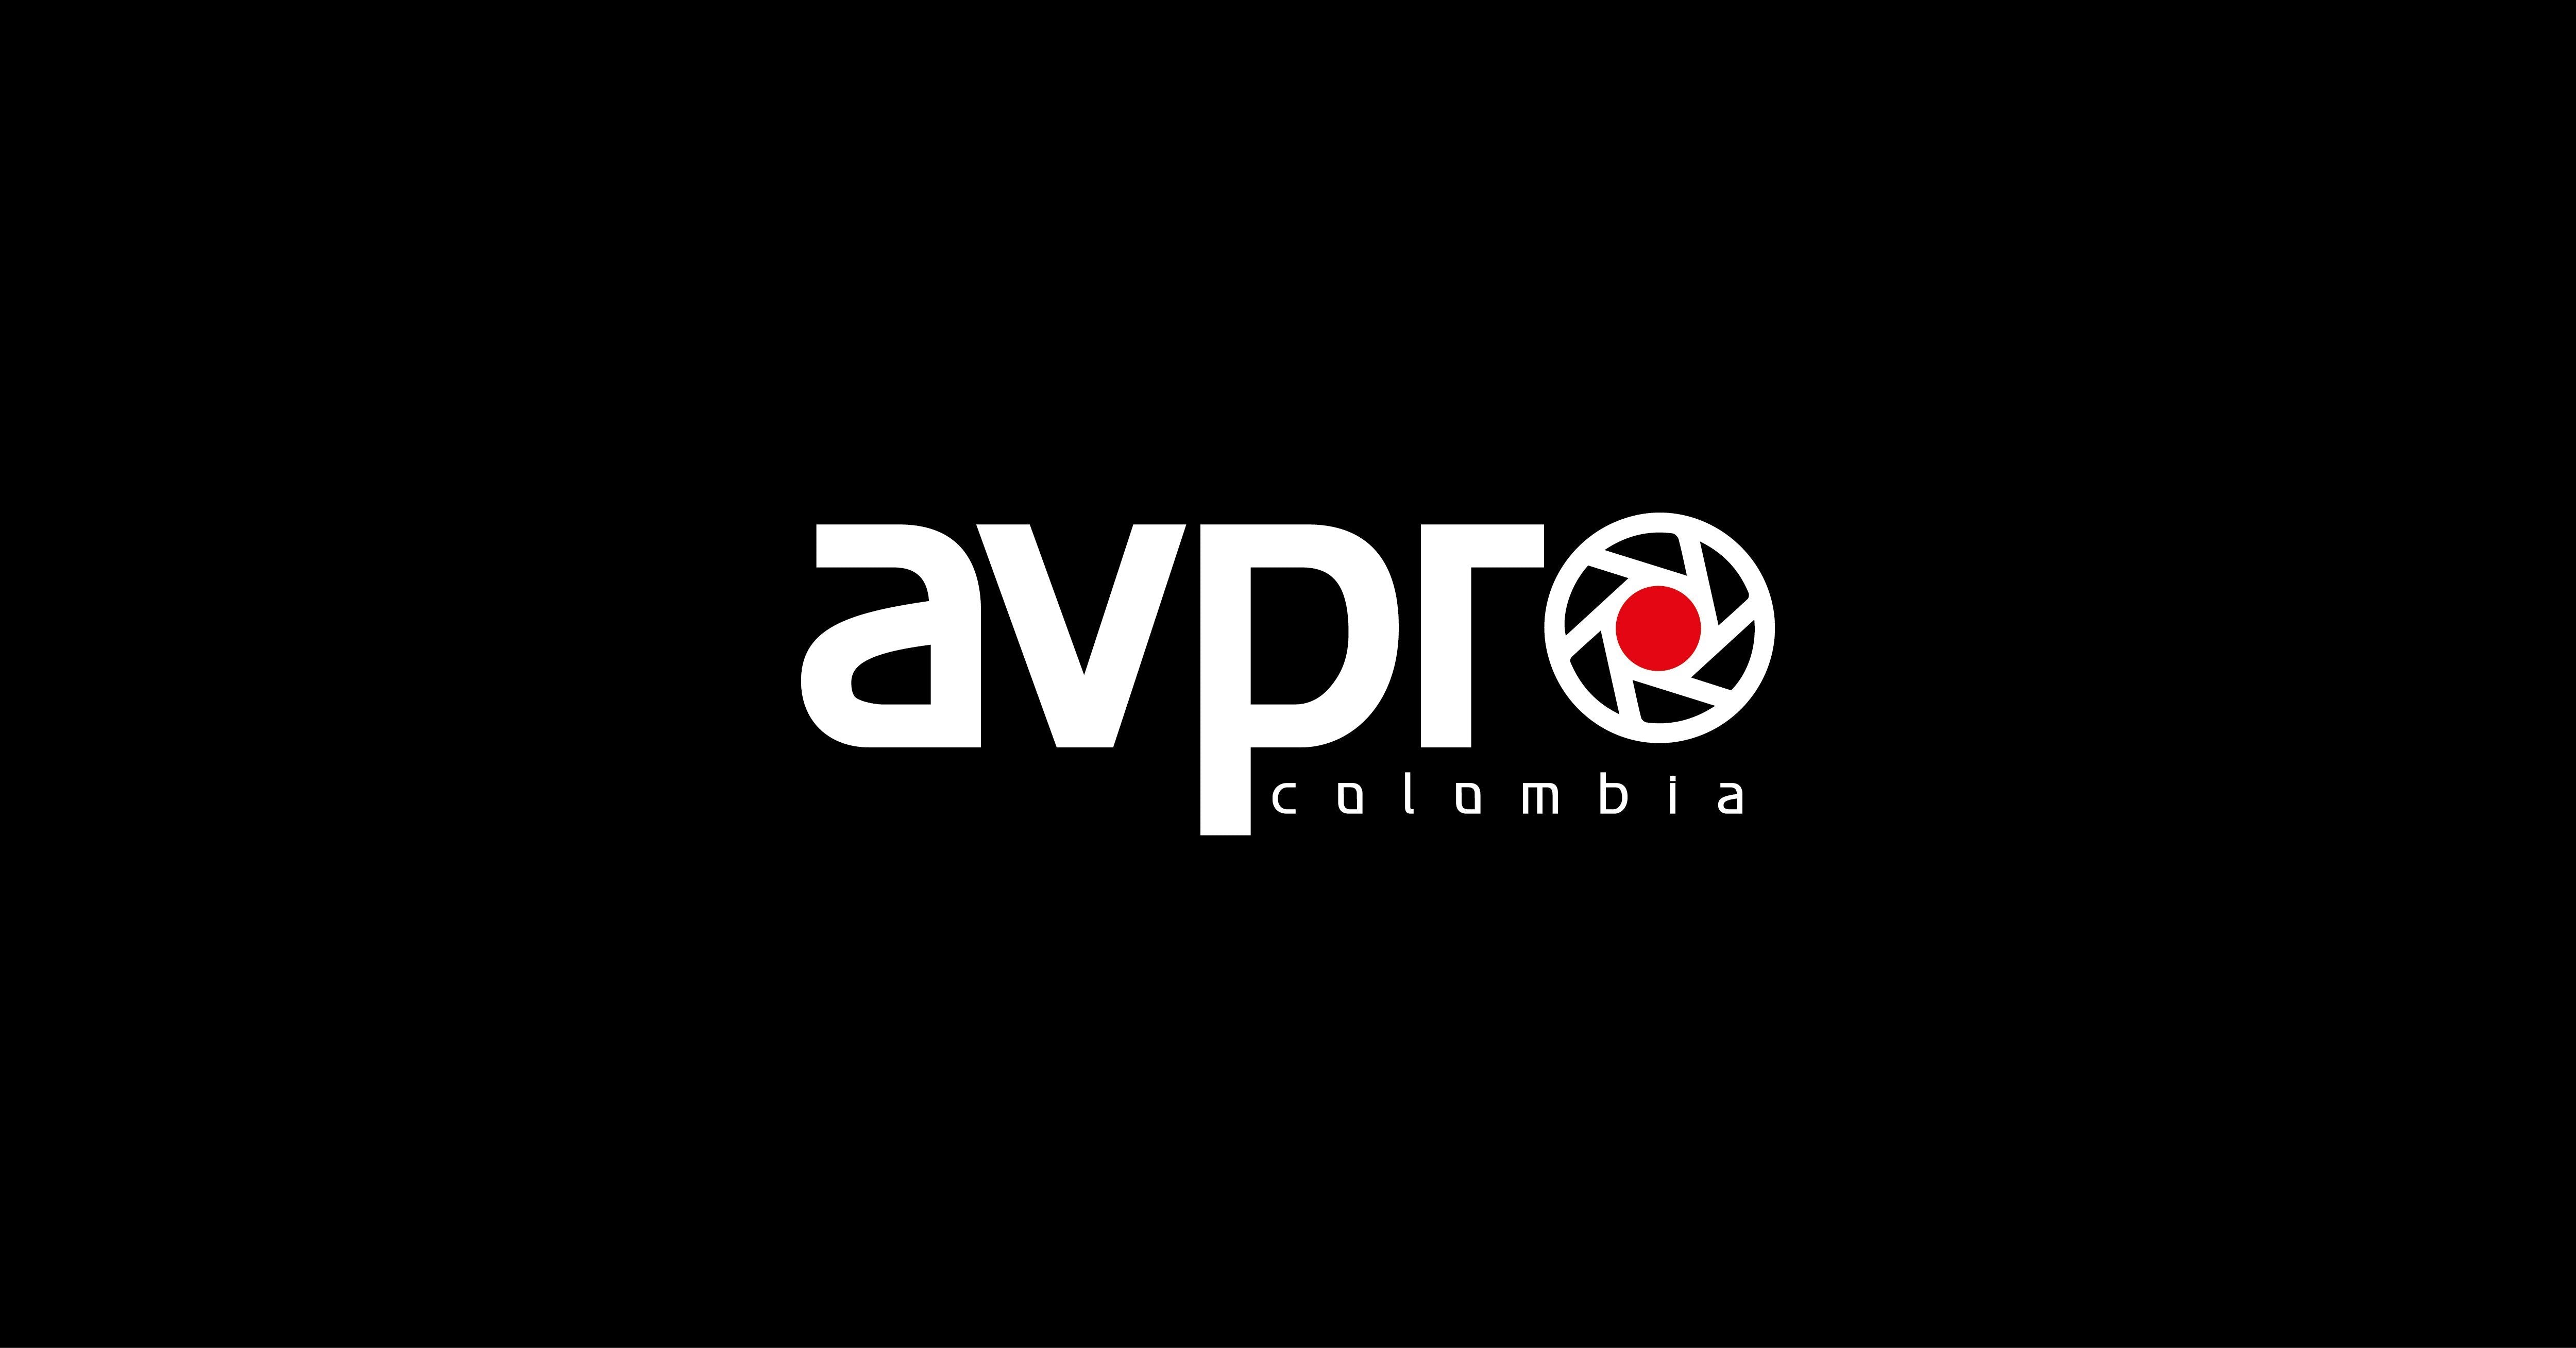 www.avprocolombia.com.co